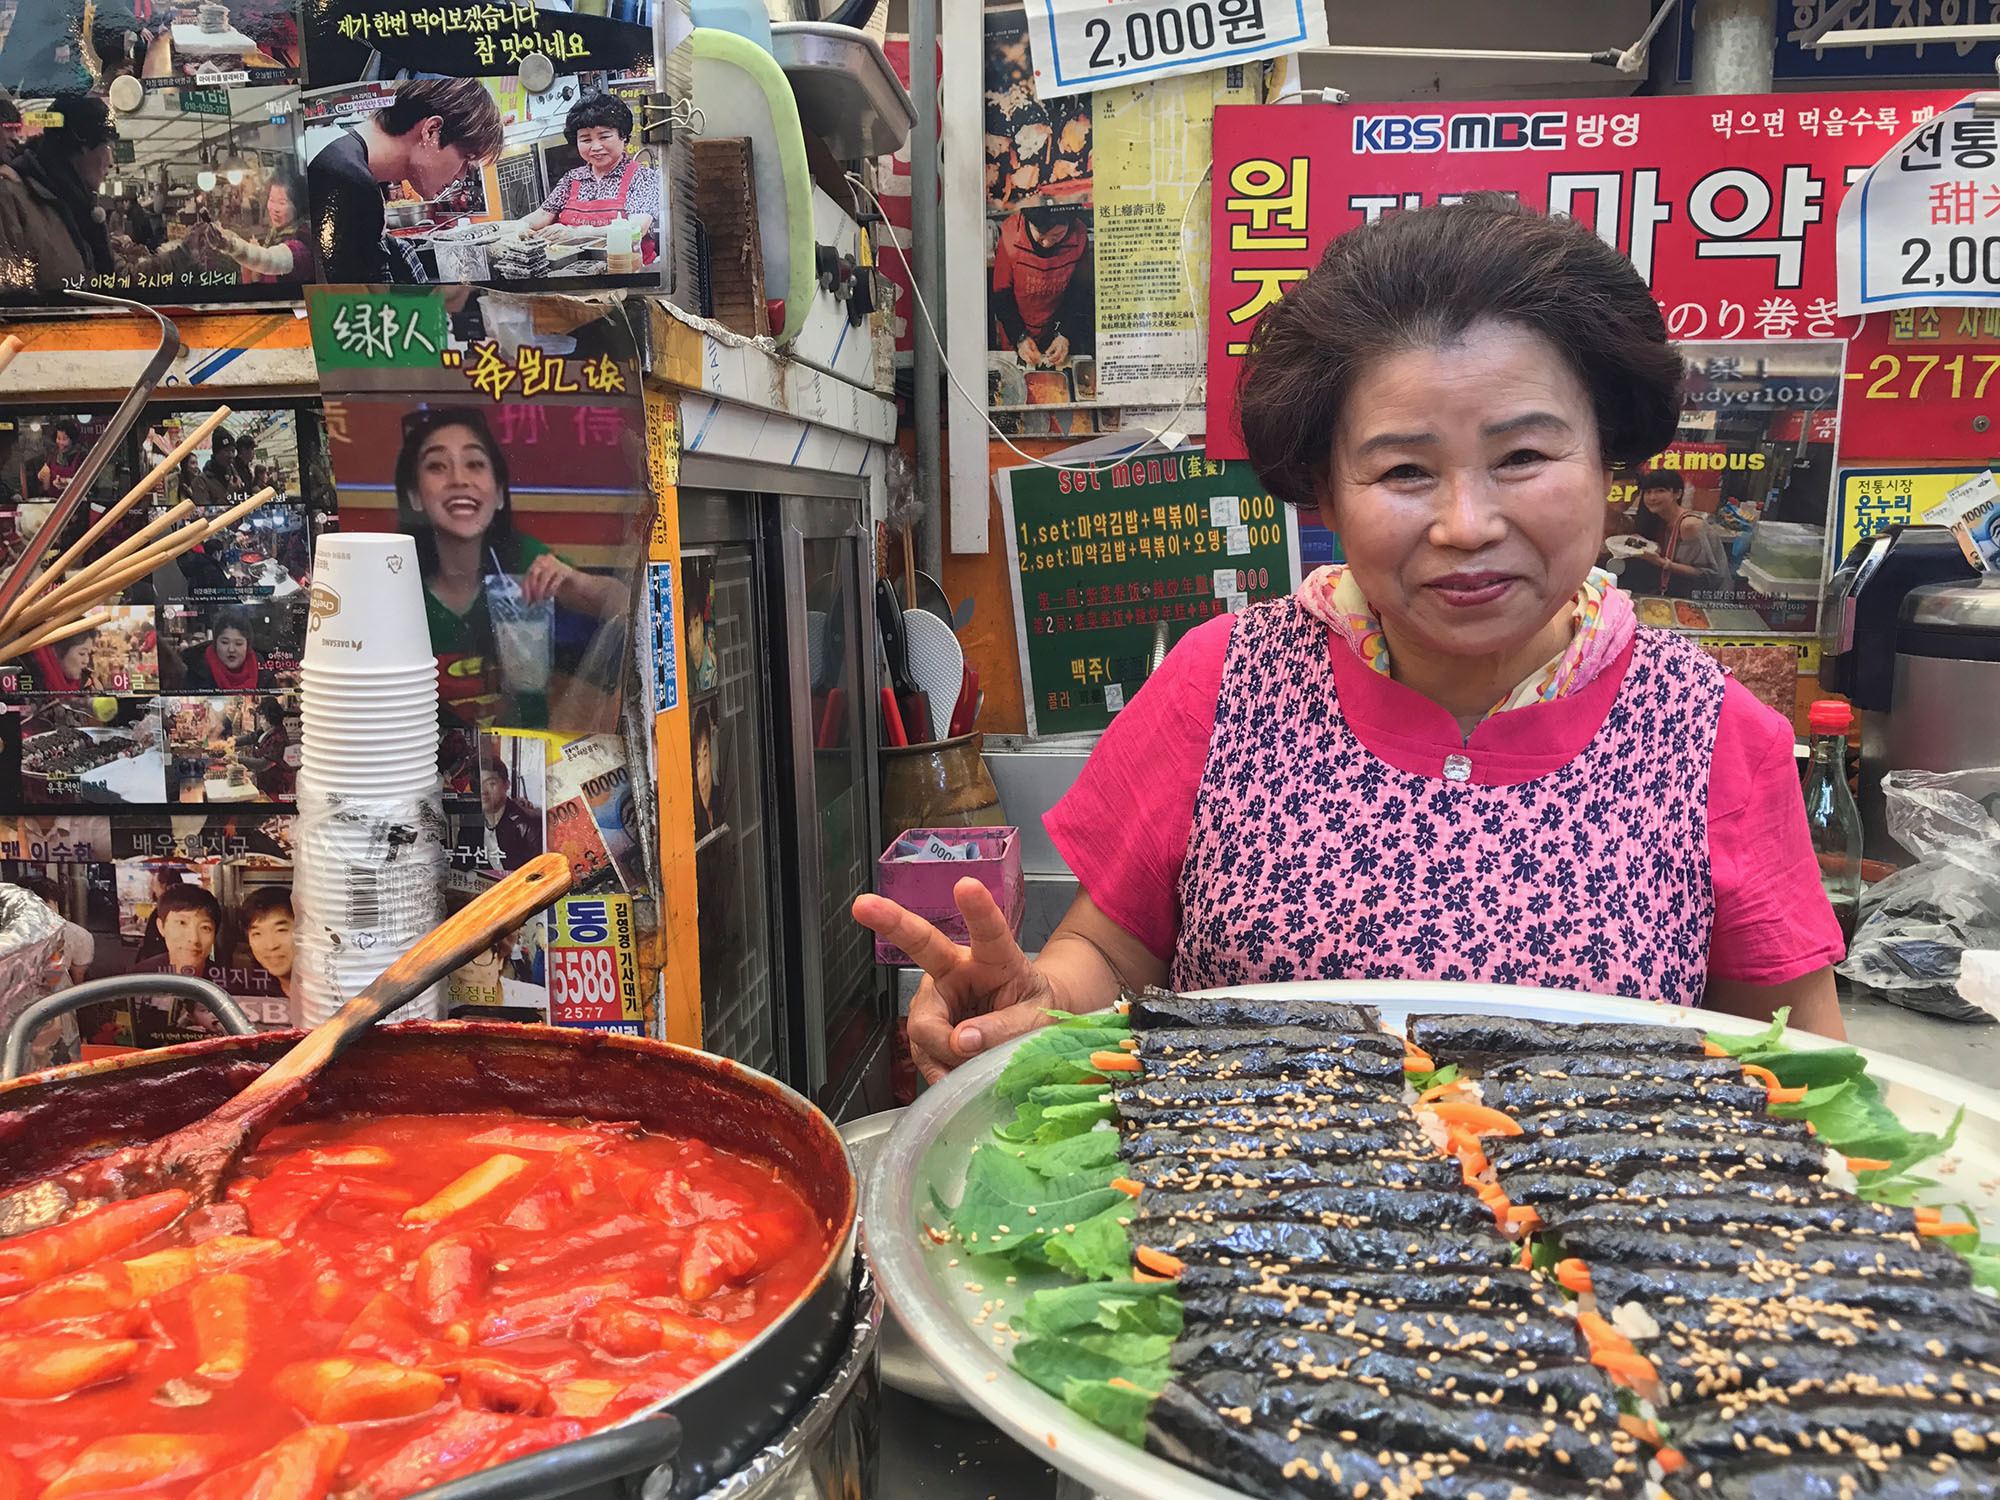 Korean woman behind food stall at Gwangjang Market Seoul Republic of Korea